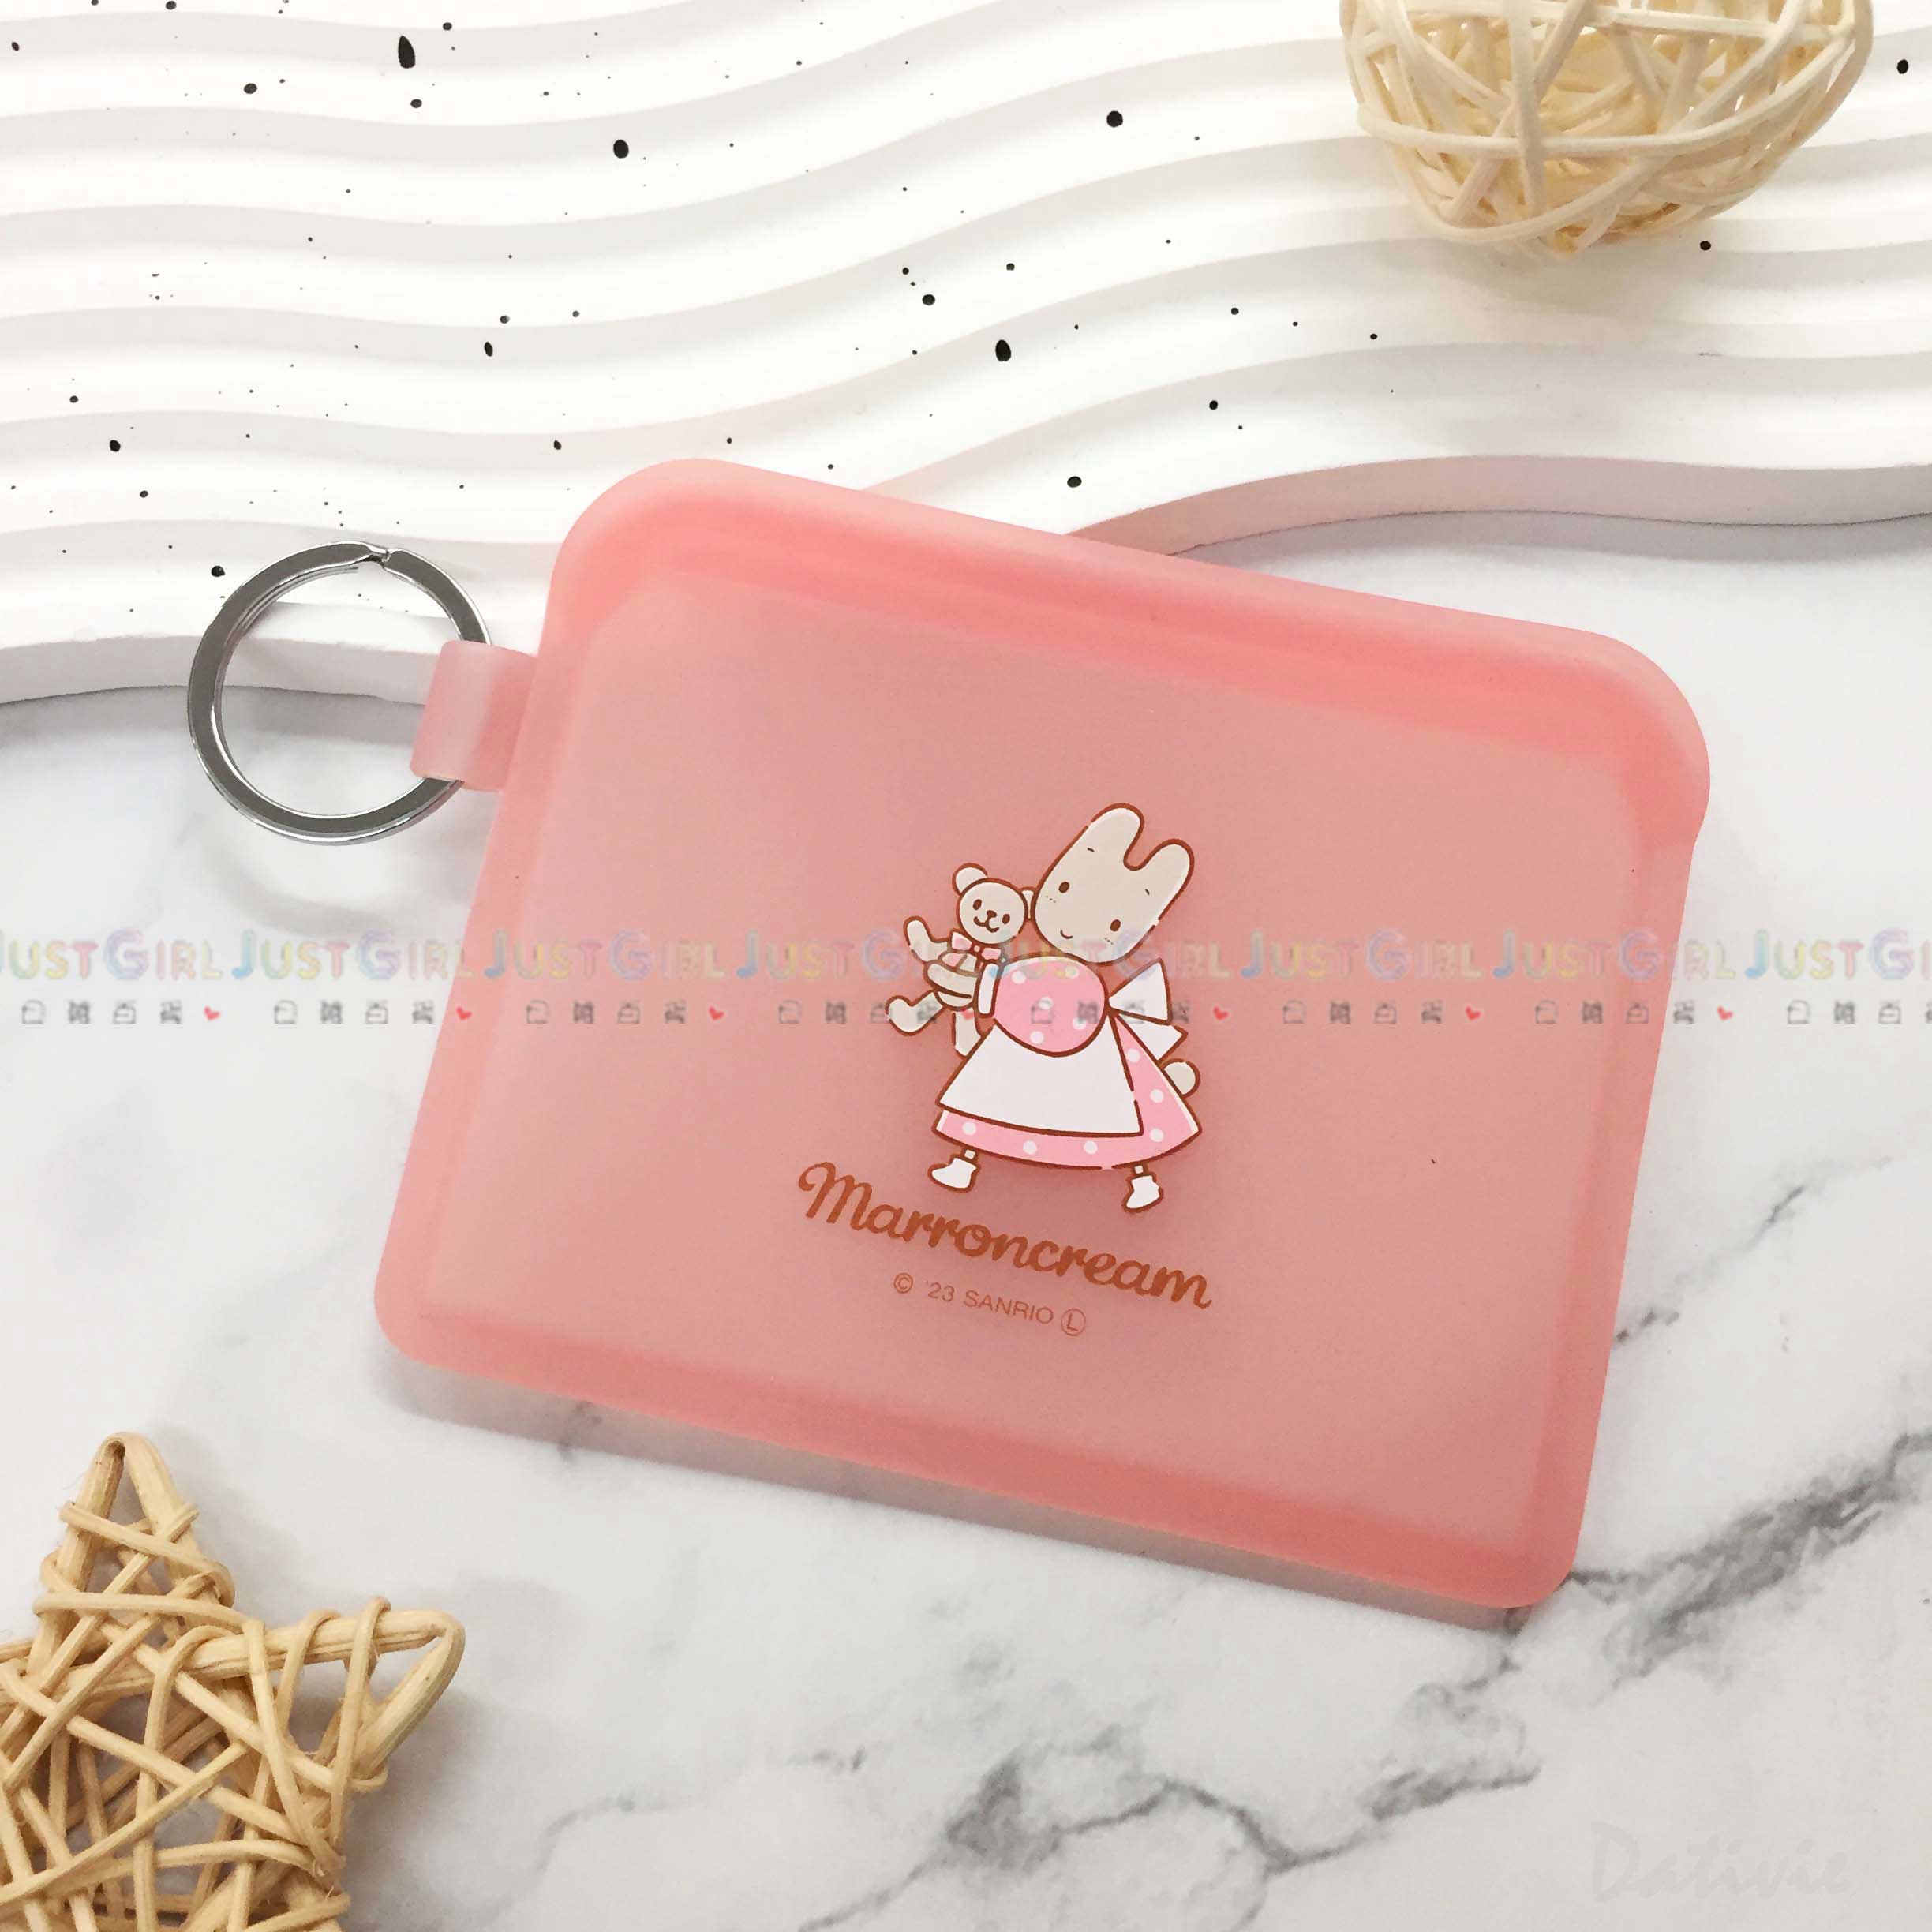 矽膠票夾零錢包-兔媽媽 三麗鷗 Sanrio 日本進口正版授權